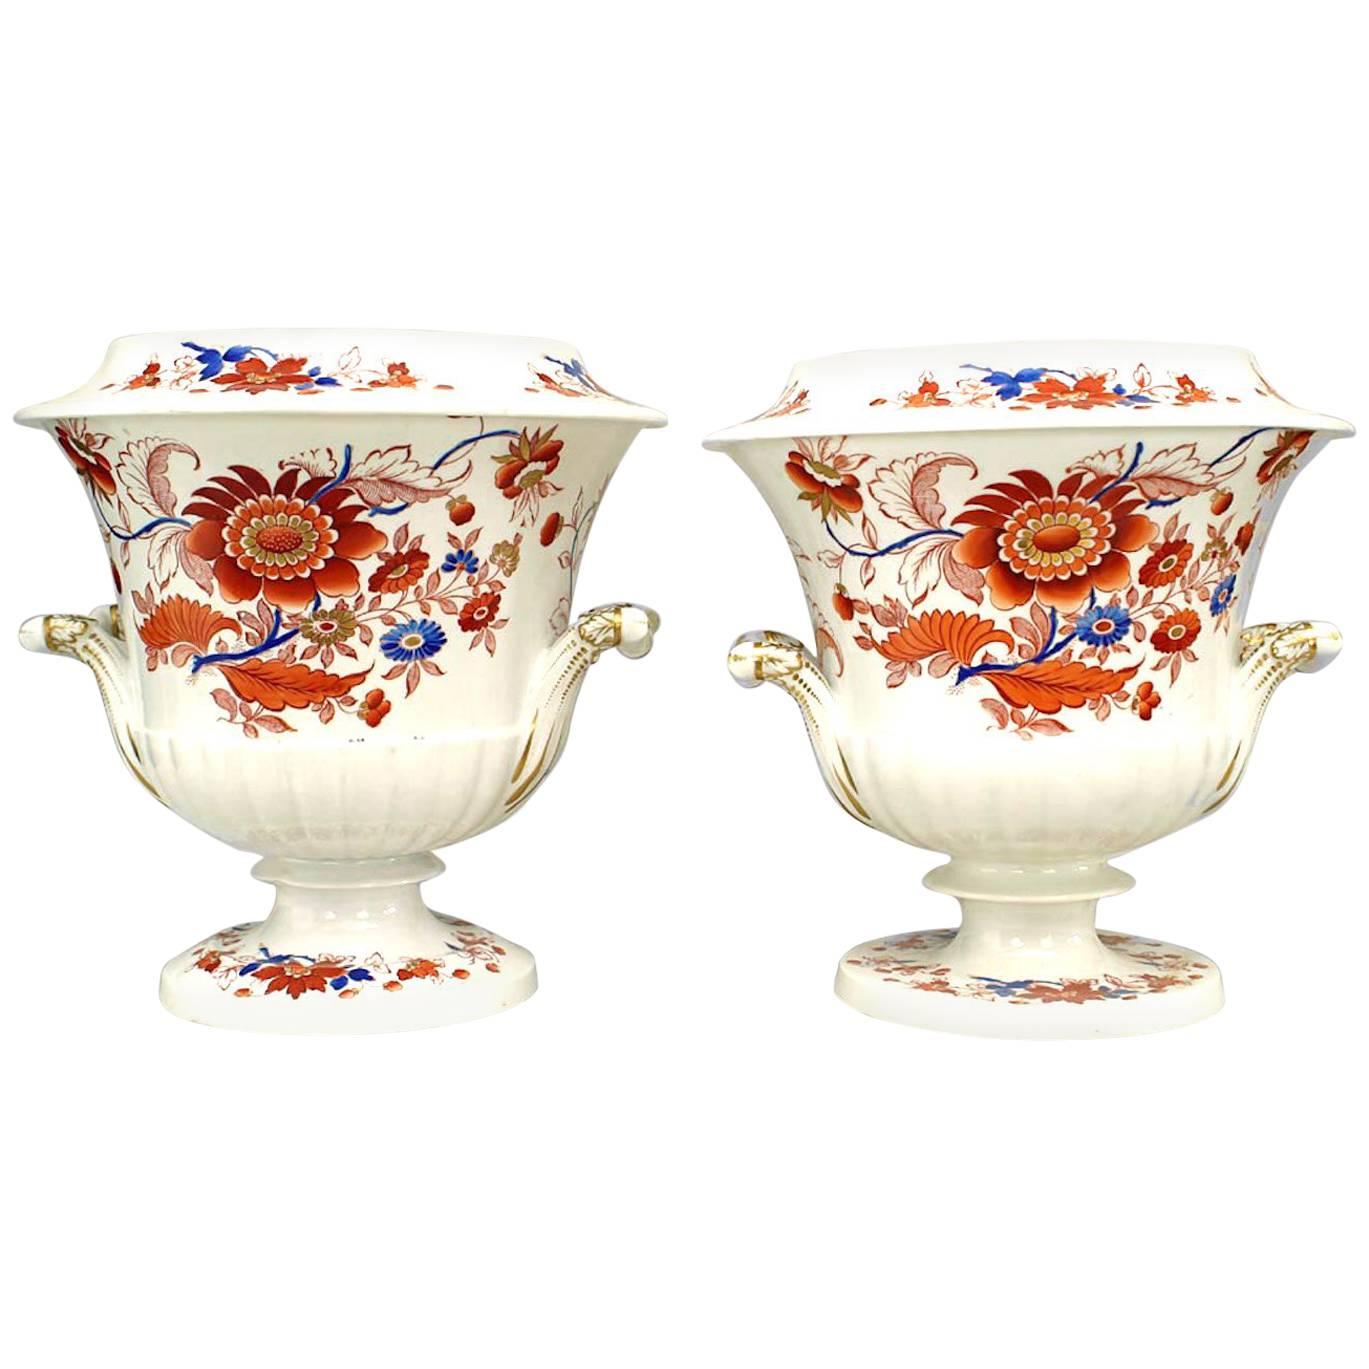 Pair of German Lowenstaff Floral Porcelain Urns